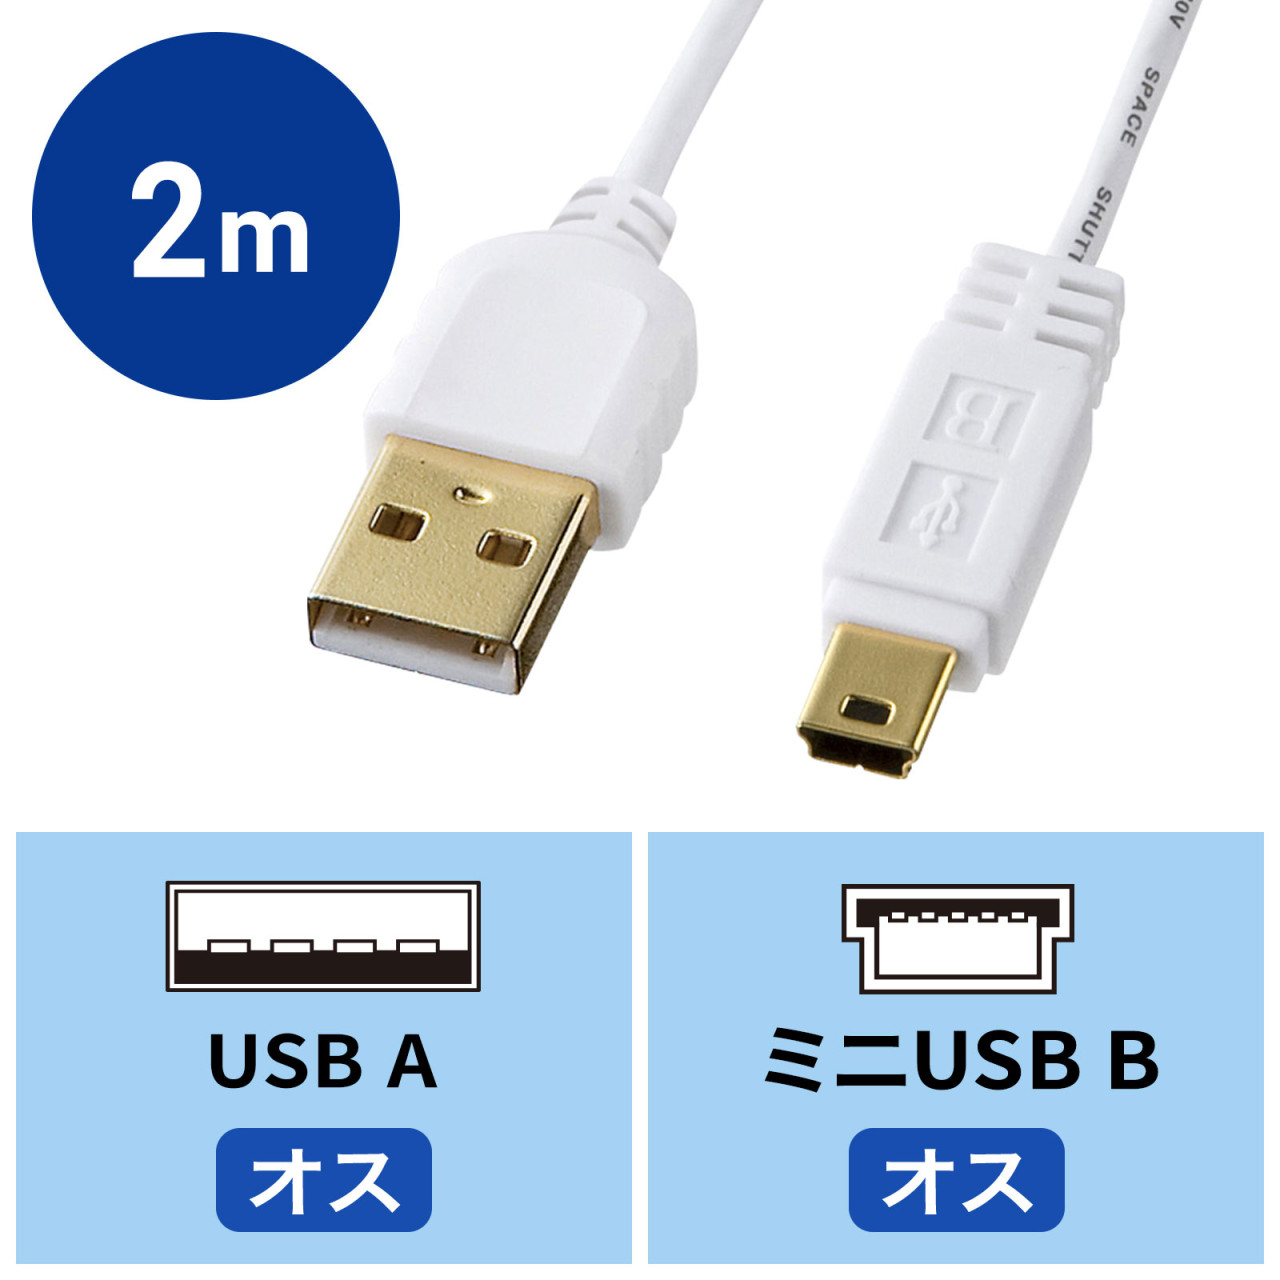 USBスイッチ付き 延長ケーブル 0.5m 611051 充電 給電 データ通信 2.4A USB2.0 LEDデスクランプ ライト 扇風機 温風機 USBメモリ スピーカー等 ポイント消化 おすすめ 送料無料